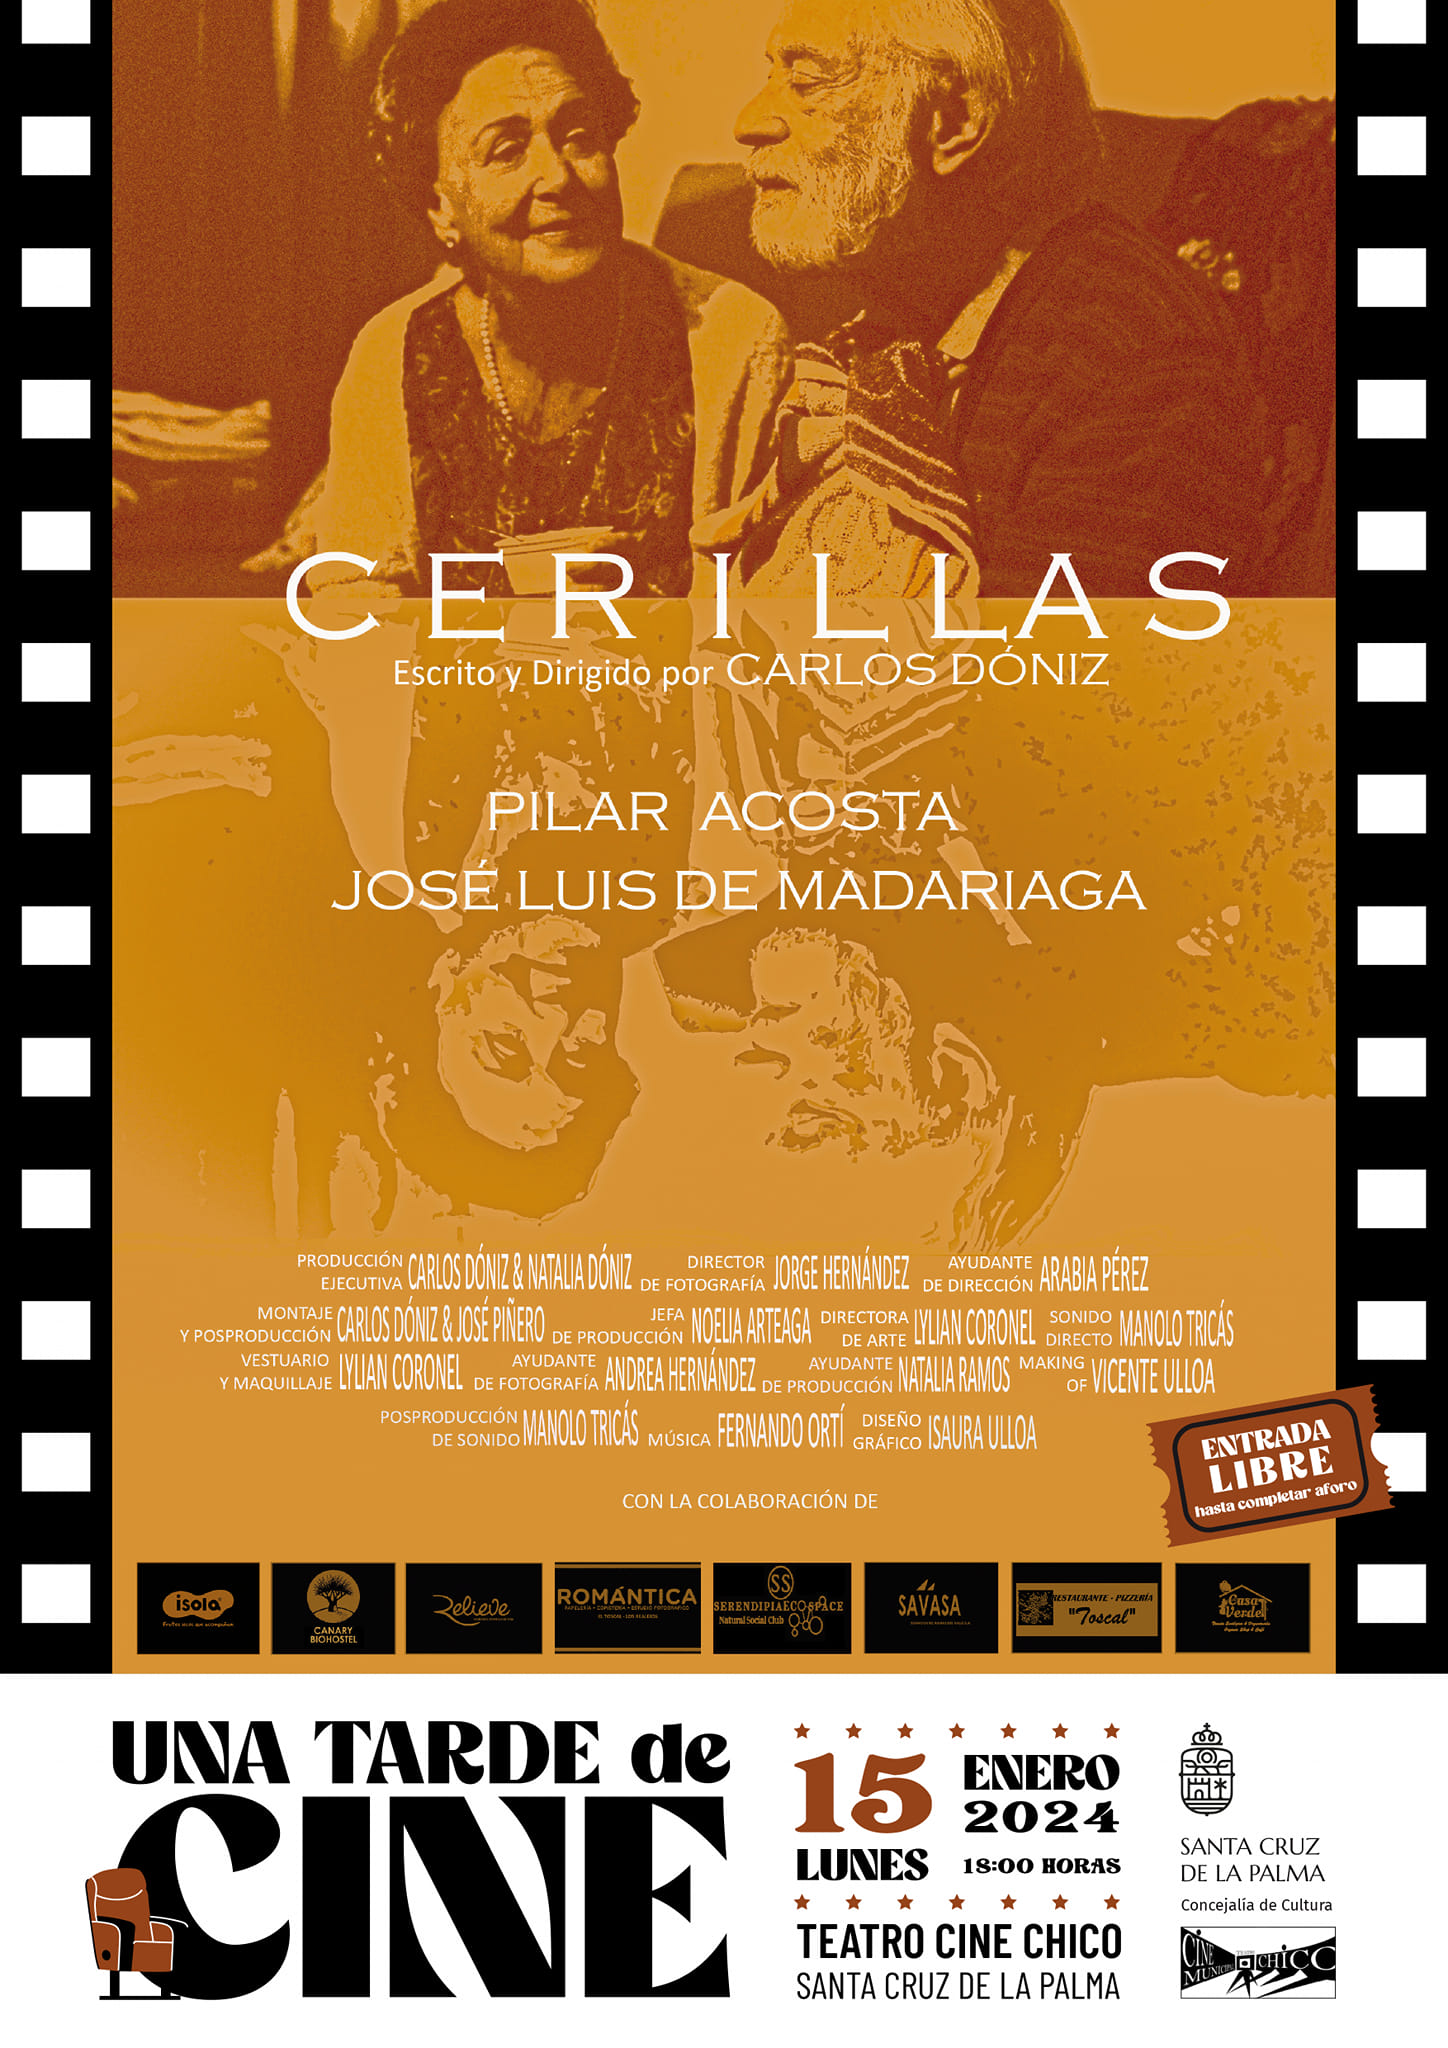 El Teatro Chico proyecta el corto "Cerillas", de Carlos Dóniz